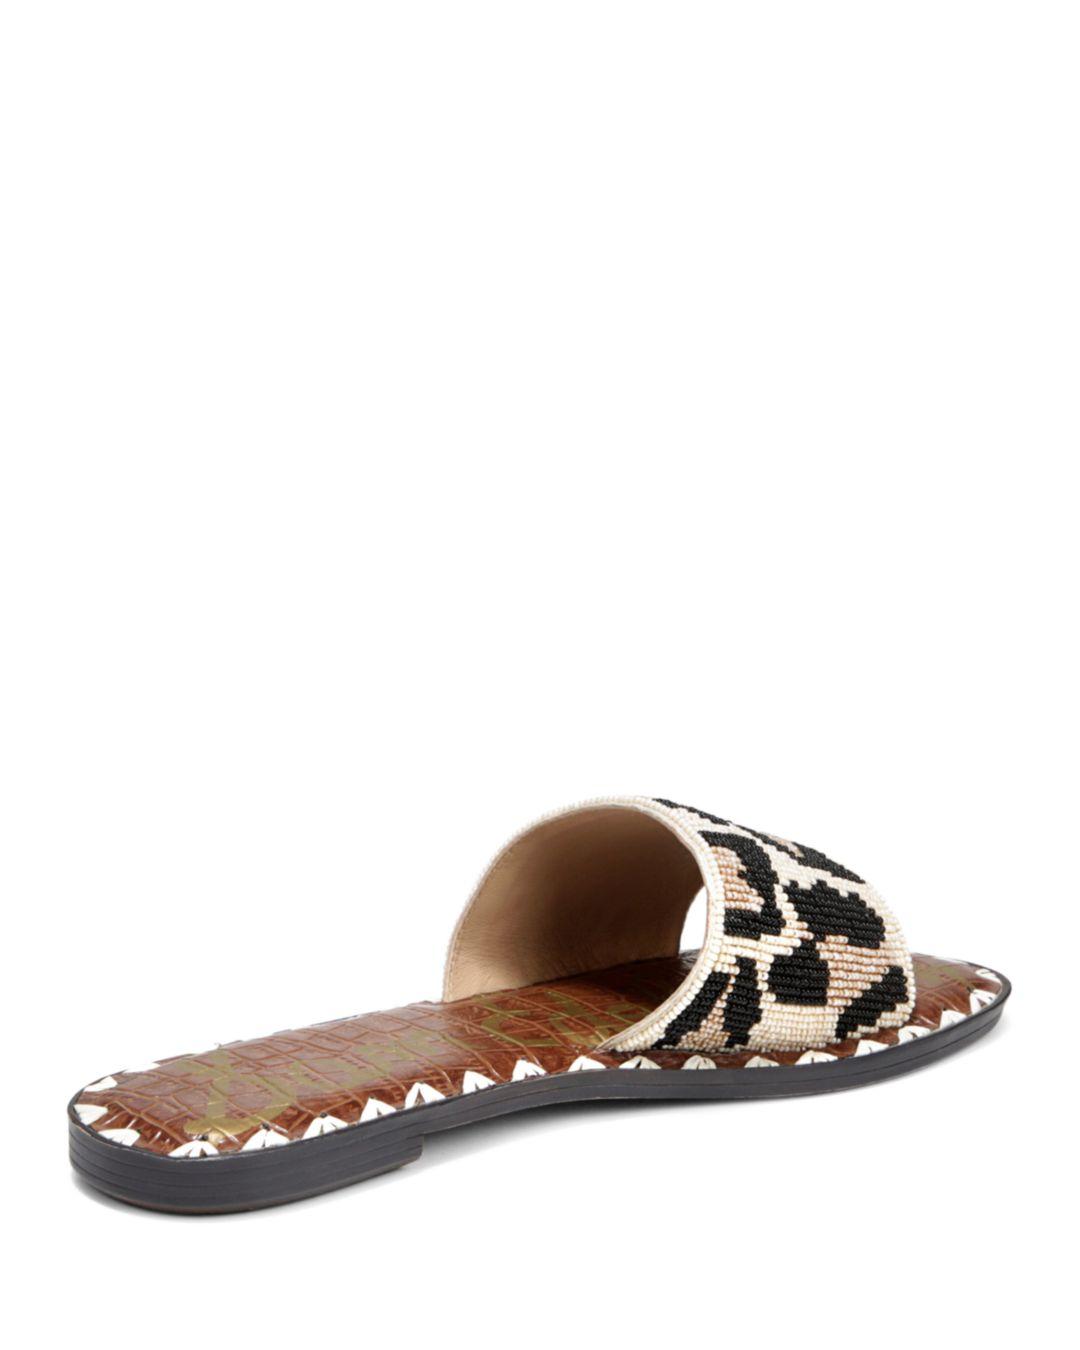 sam edelman gunner leopard flat sandal